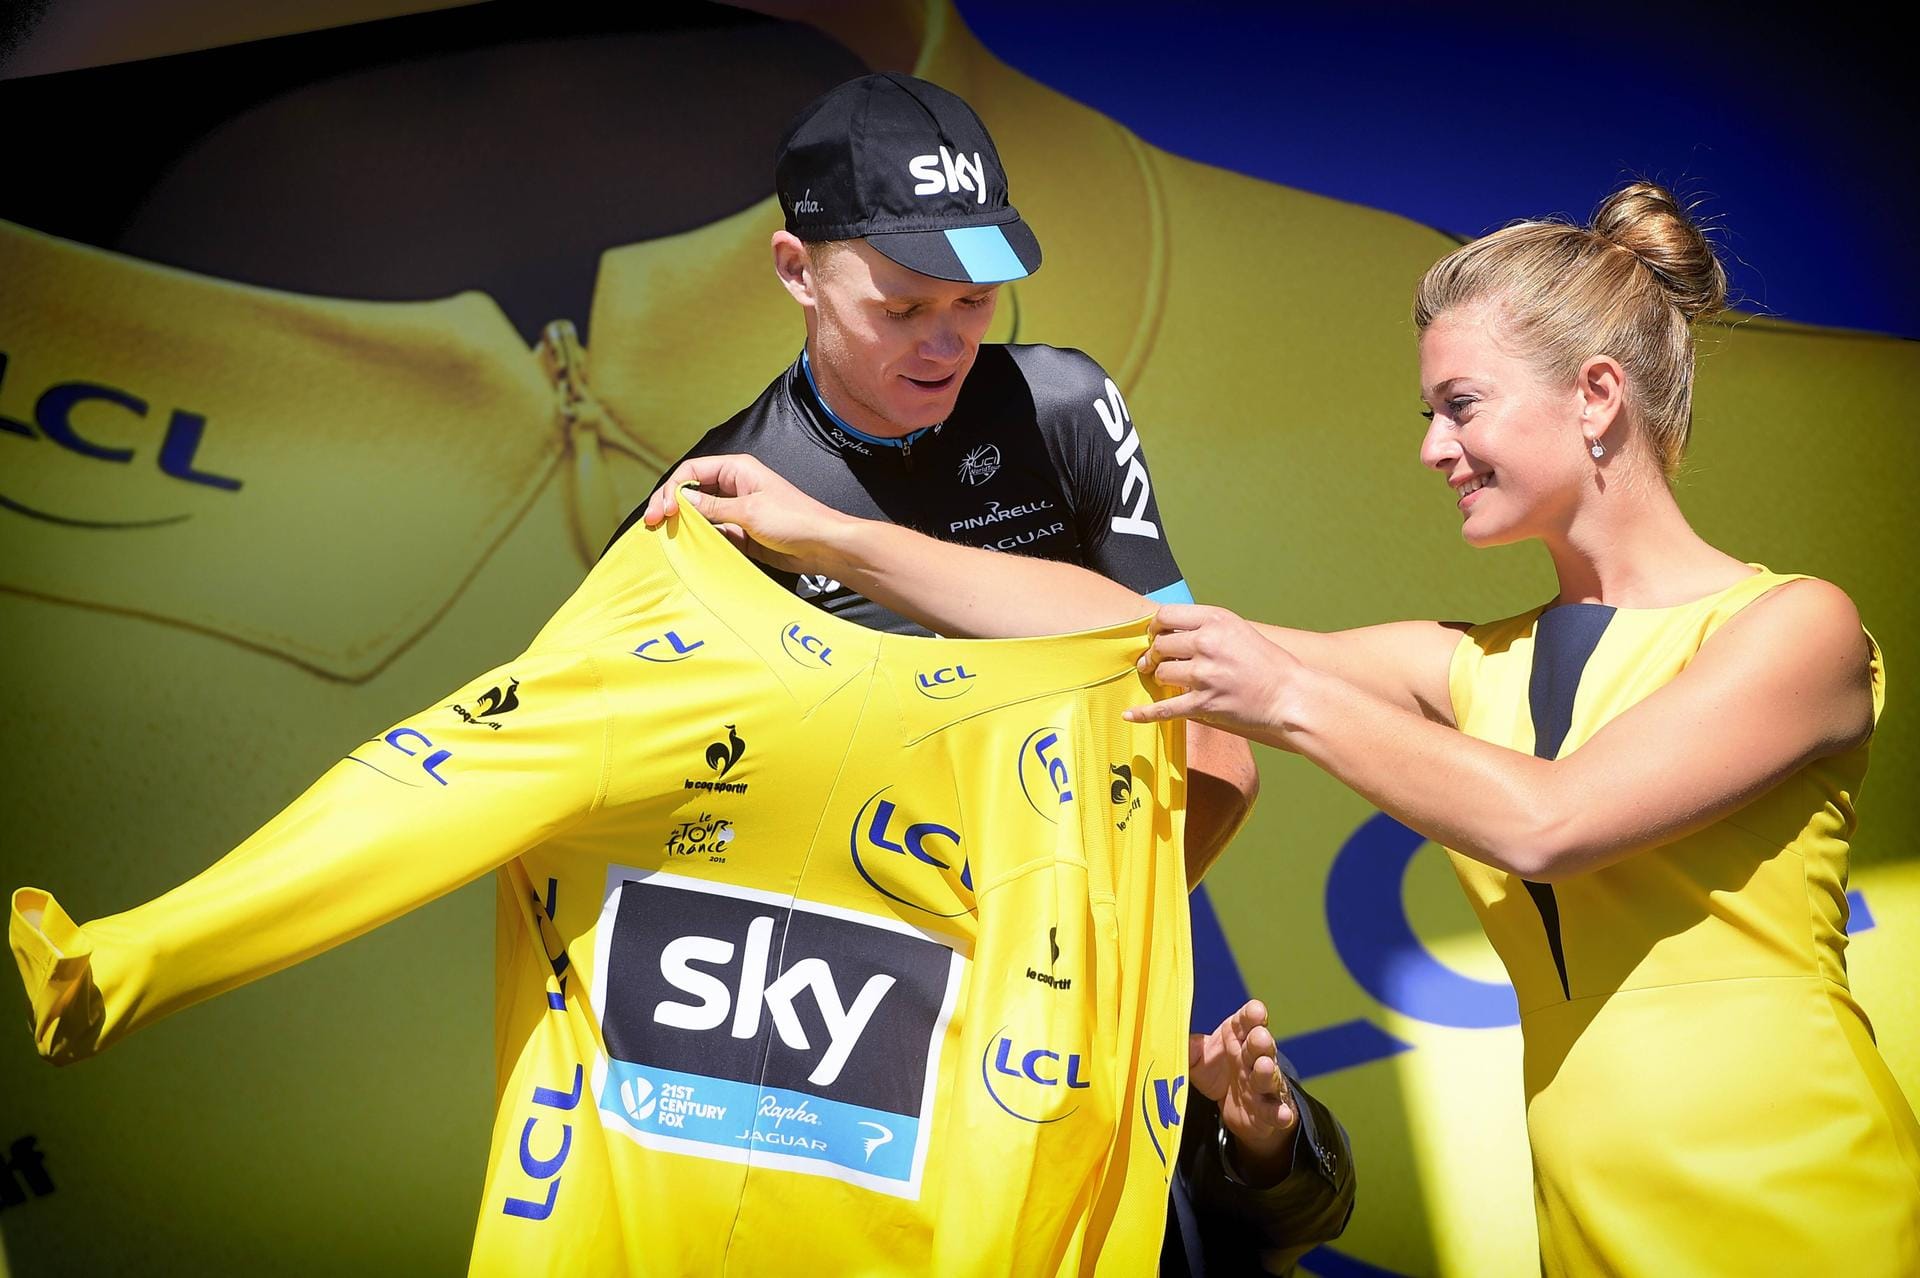 Ankleidedame: Christopher Froome bekommt bei der Tour de France höchst attraktive Hilfe mit seinem Gelben Trikot.